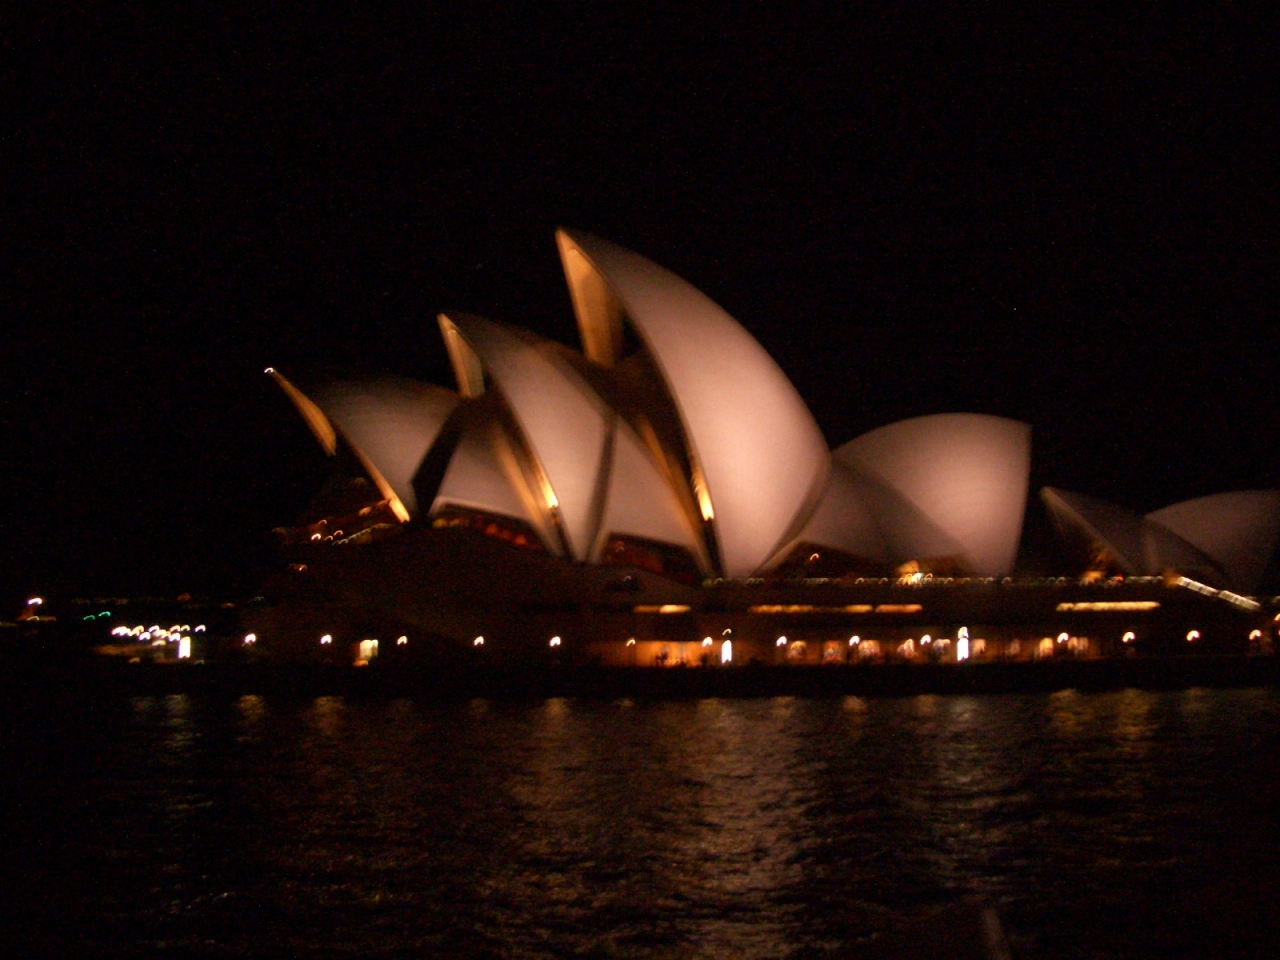 一泊三日のオーストラリア旅行 Season S Greetings シドニー オーストラリア の旅行記 ブログ By Hamaさん フォートラベル